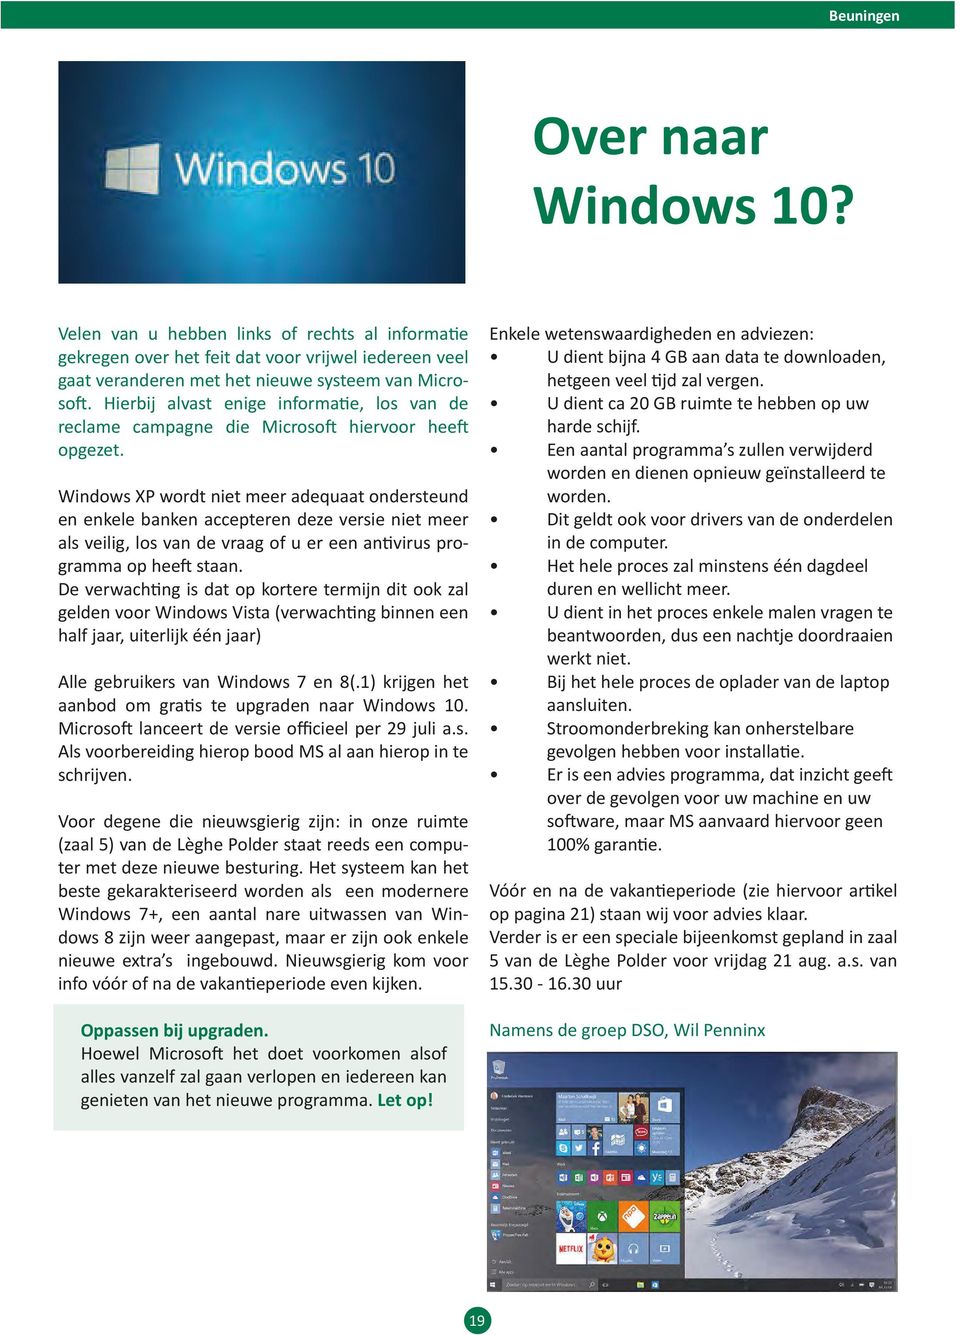 Windows XP wordt niet meer adequaat ondersteund en enkele banken accepteren deze versie niet meer als veilig, los van de vraag of u er een antivirus programma op heeft staan.